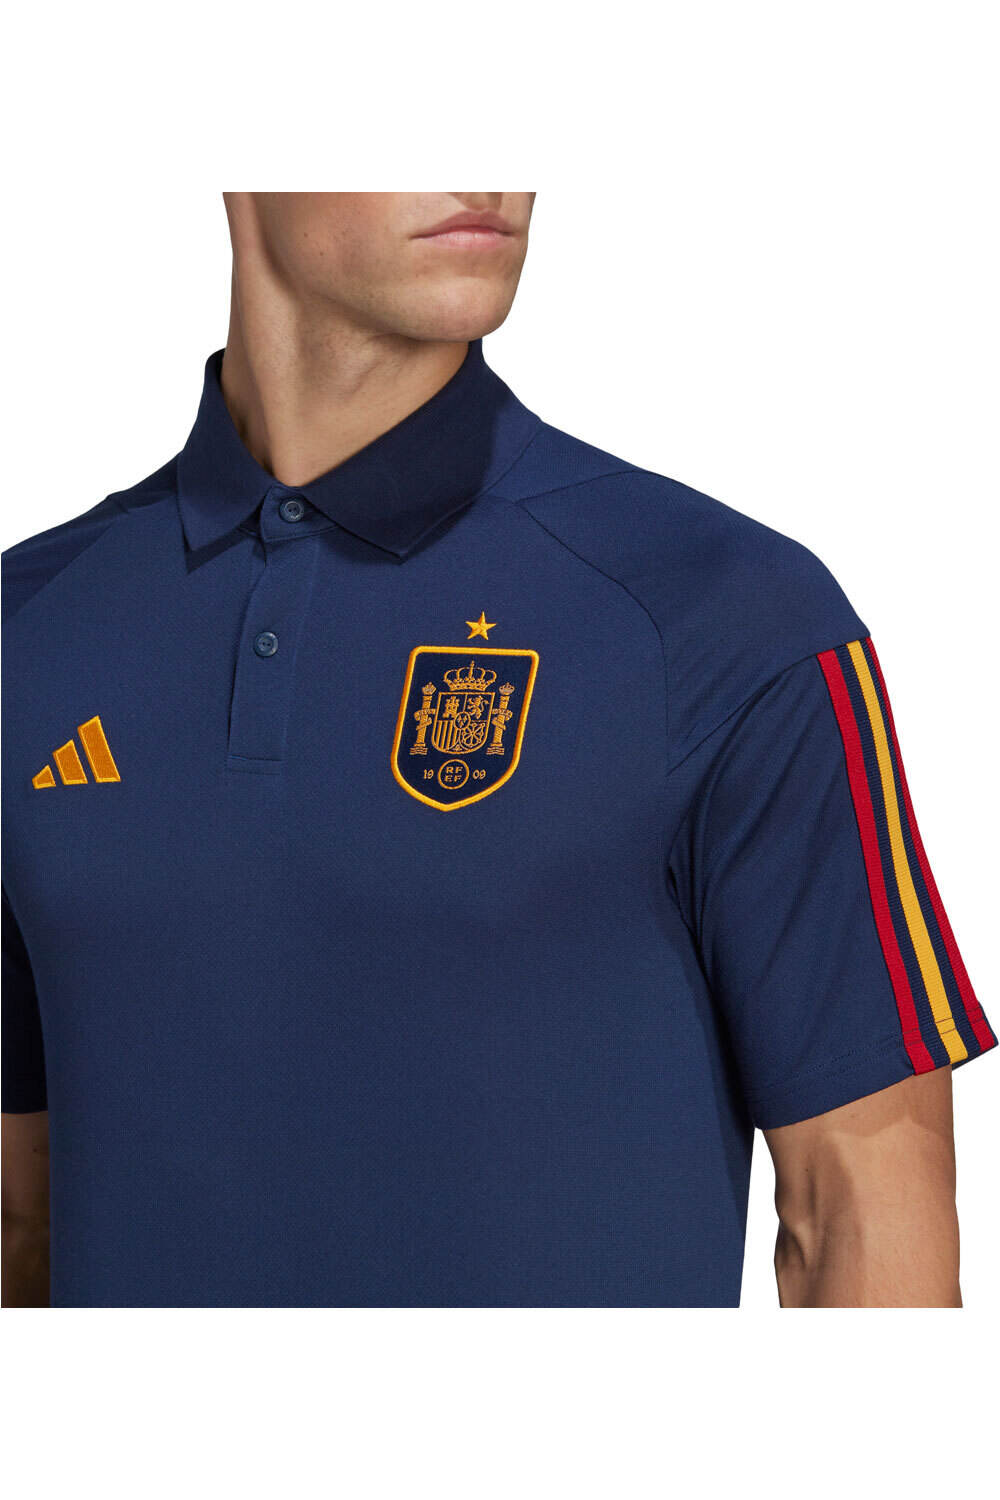 adidas camiseta de fútbol oficiales Spain vista detalle